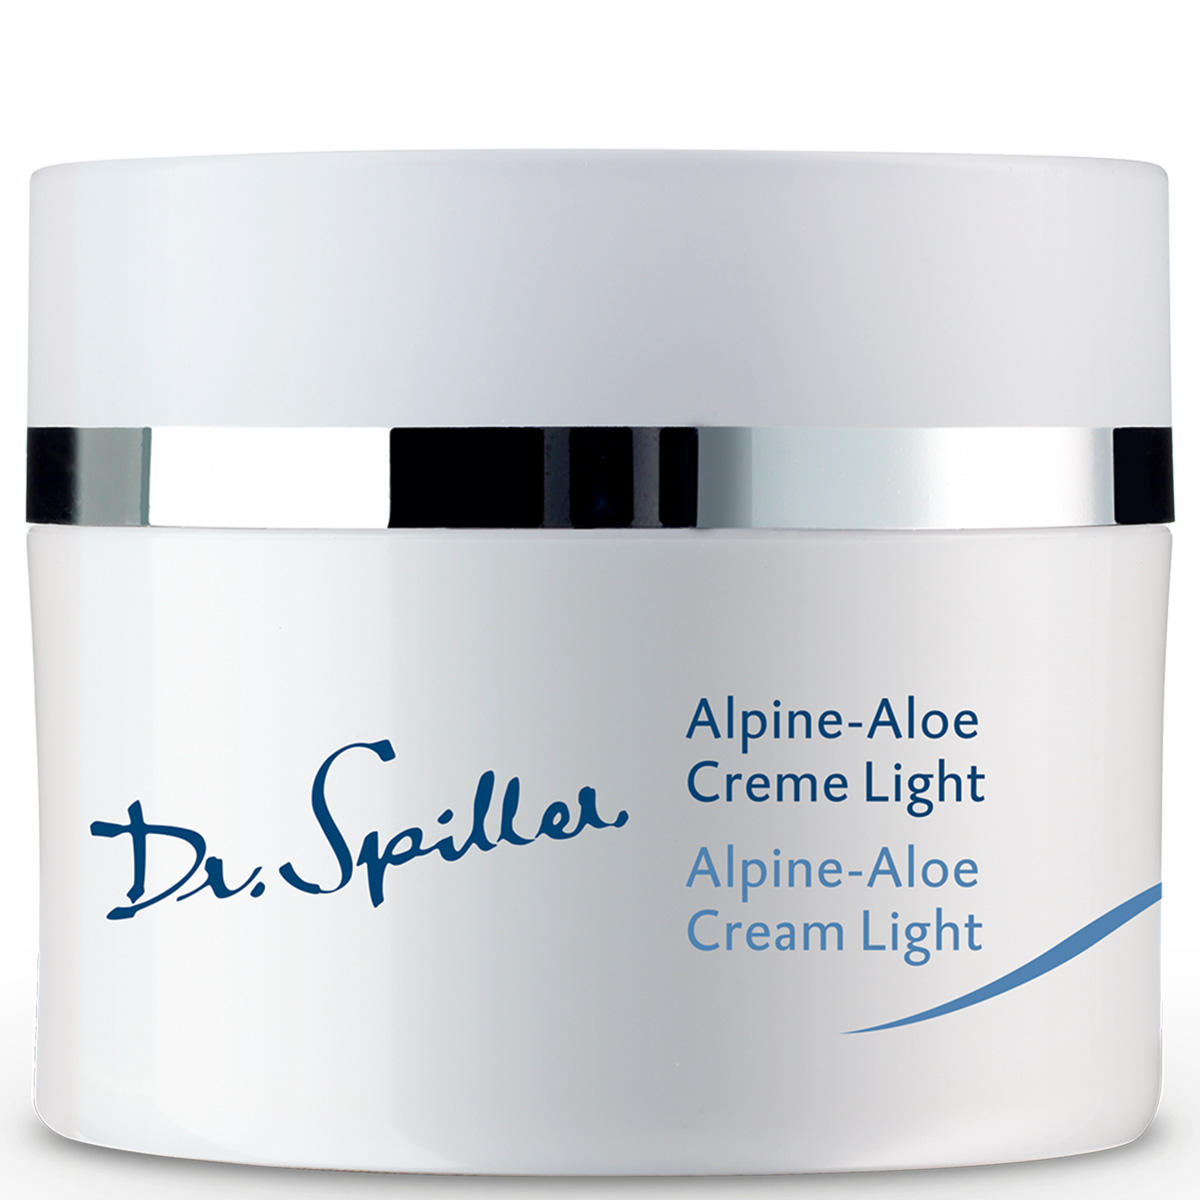 Dr. Spiller Alpine-Aloe Creme Light 50 ml - 1